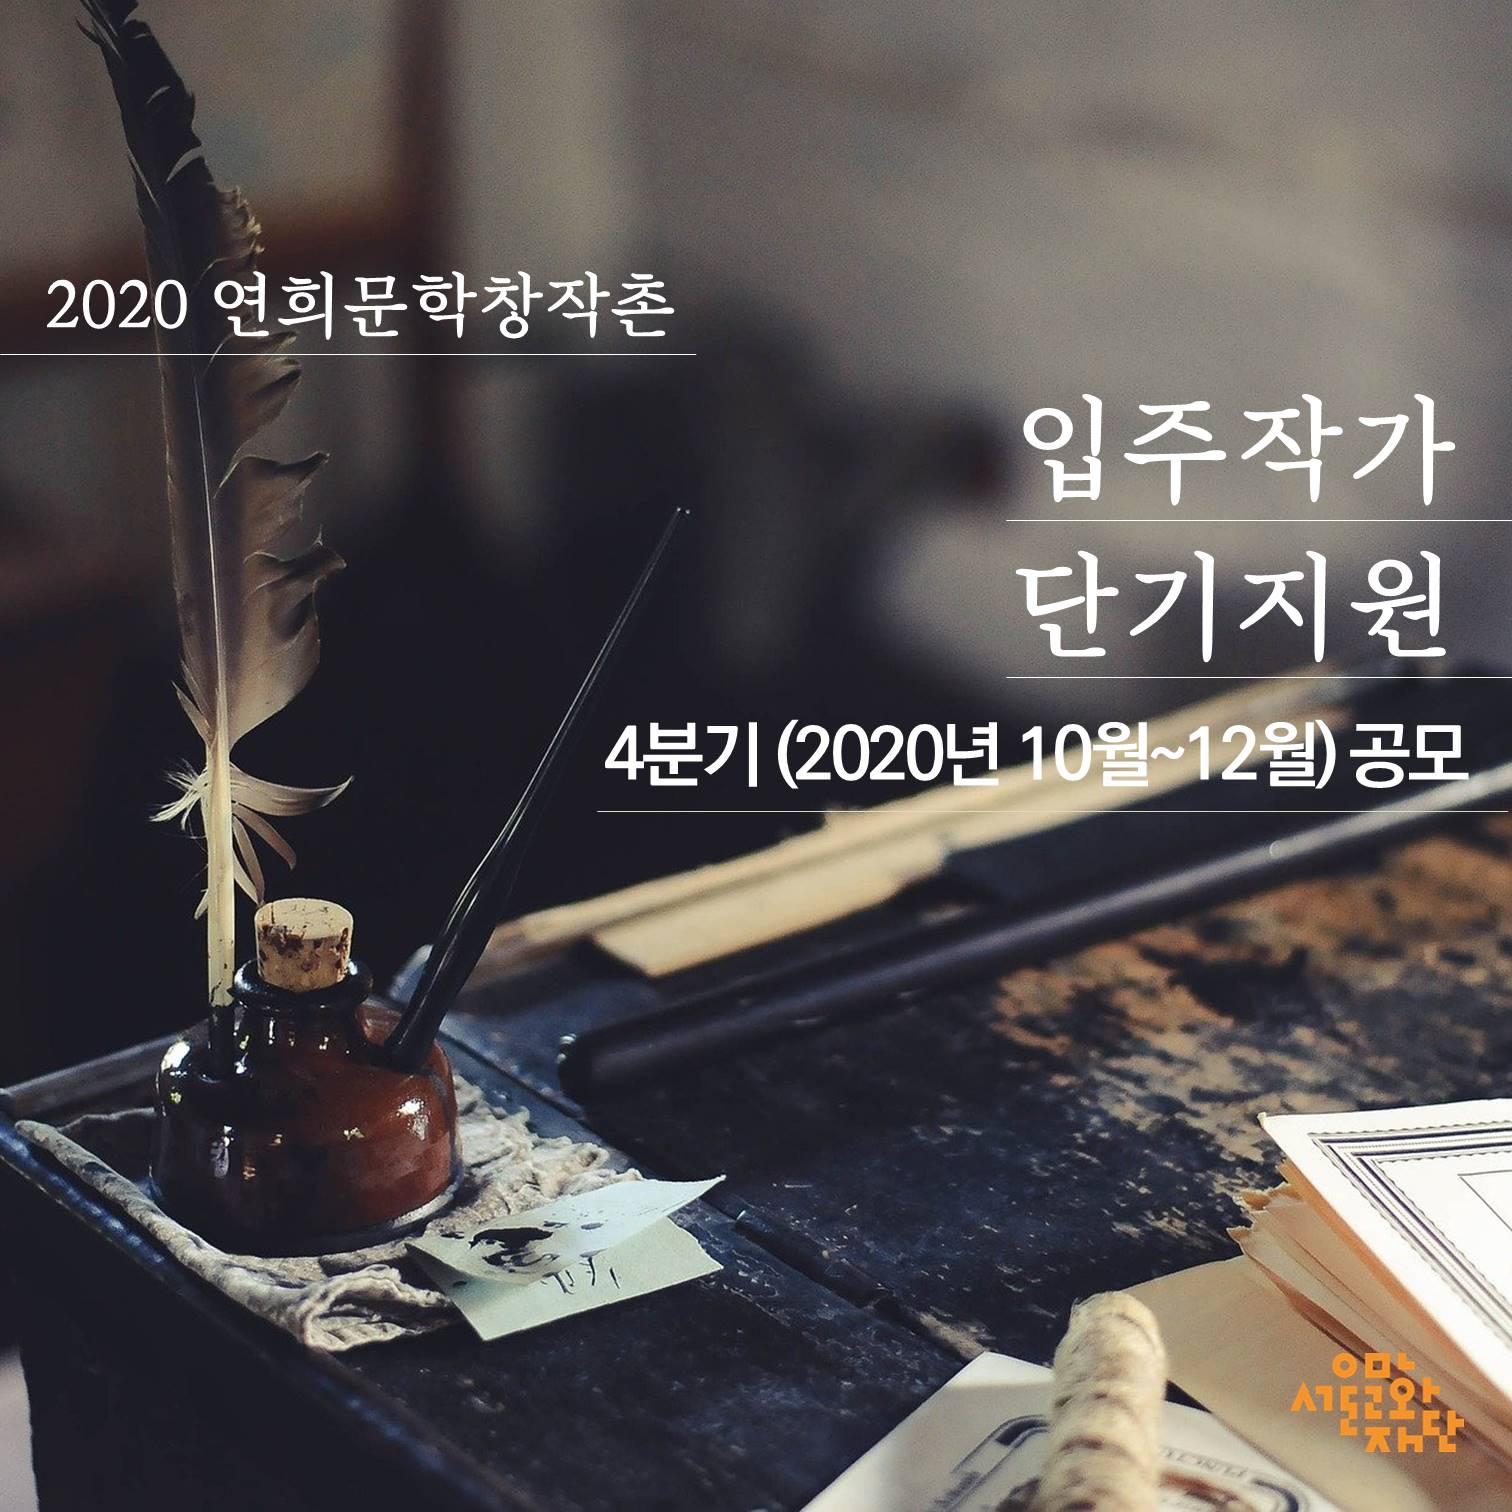 2020 연희문학창작촌 입주작가 4분기 단기지원 공모